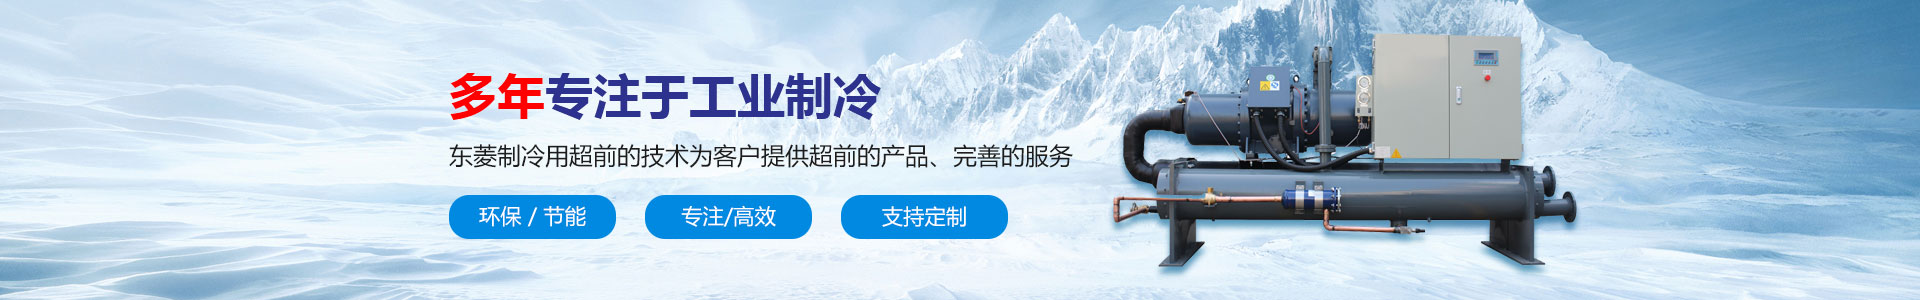 深圳市东菱制冷设备有限公司_风冷式冷水机